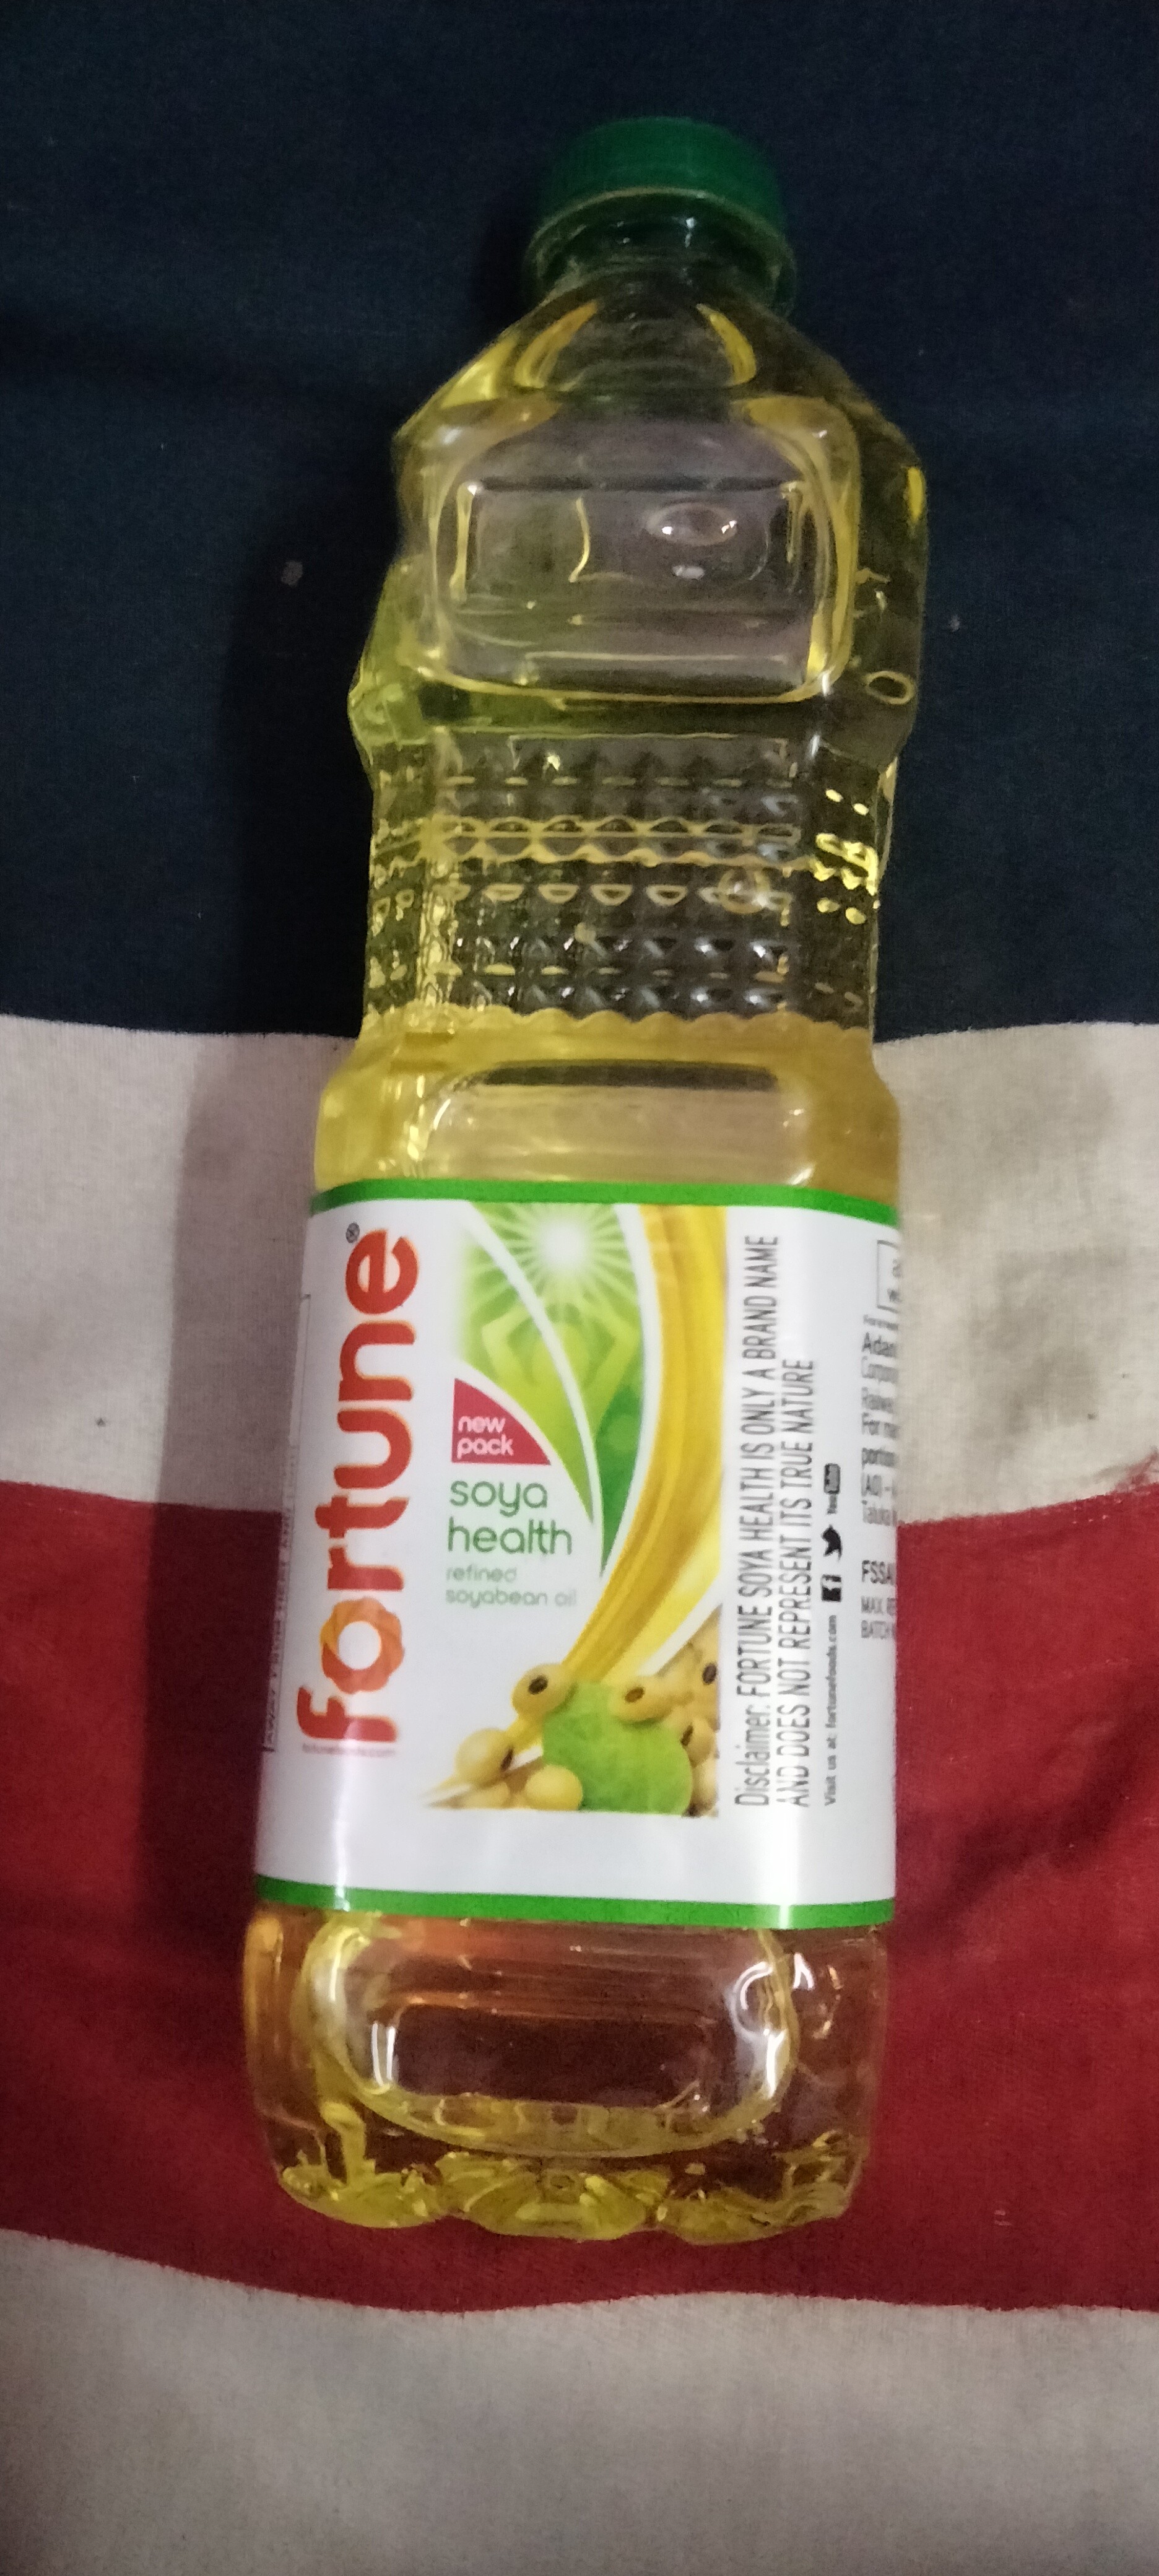 Fortune Soya health soybean oil in bottle